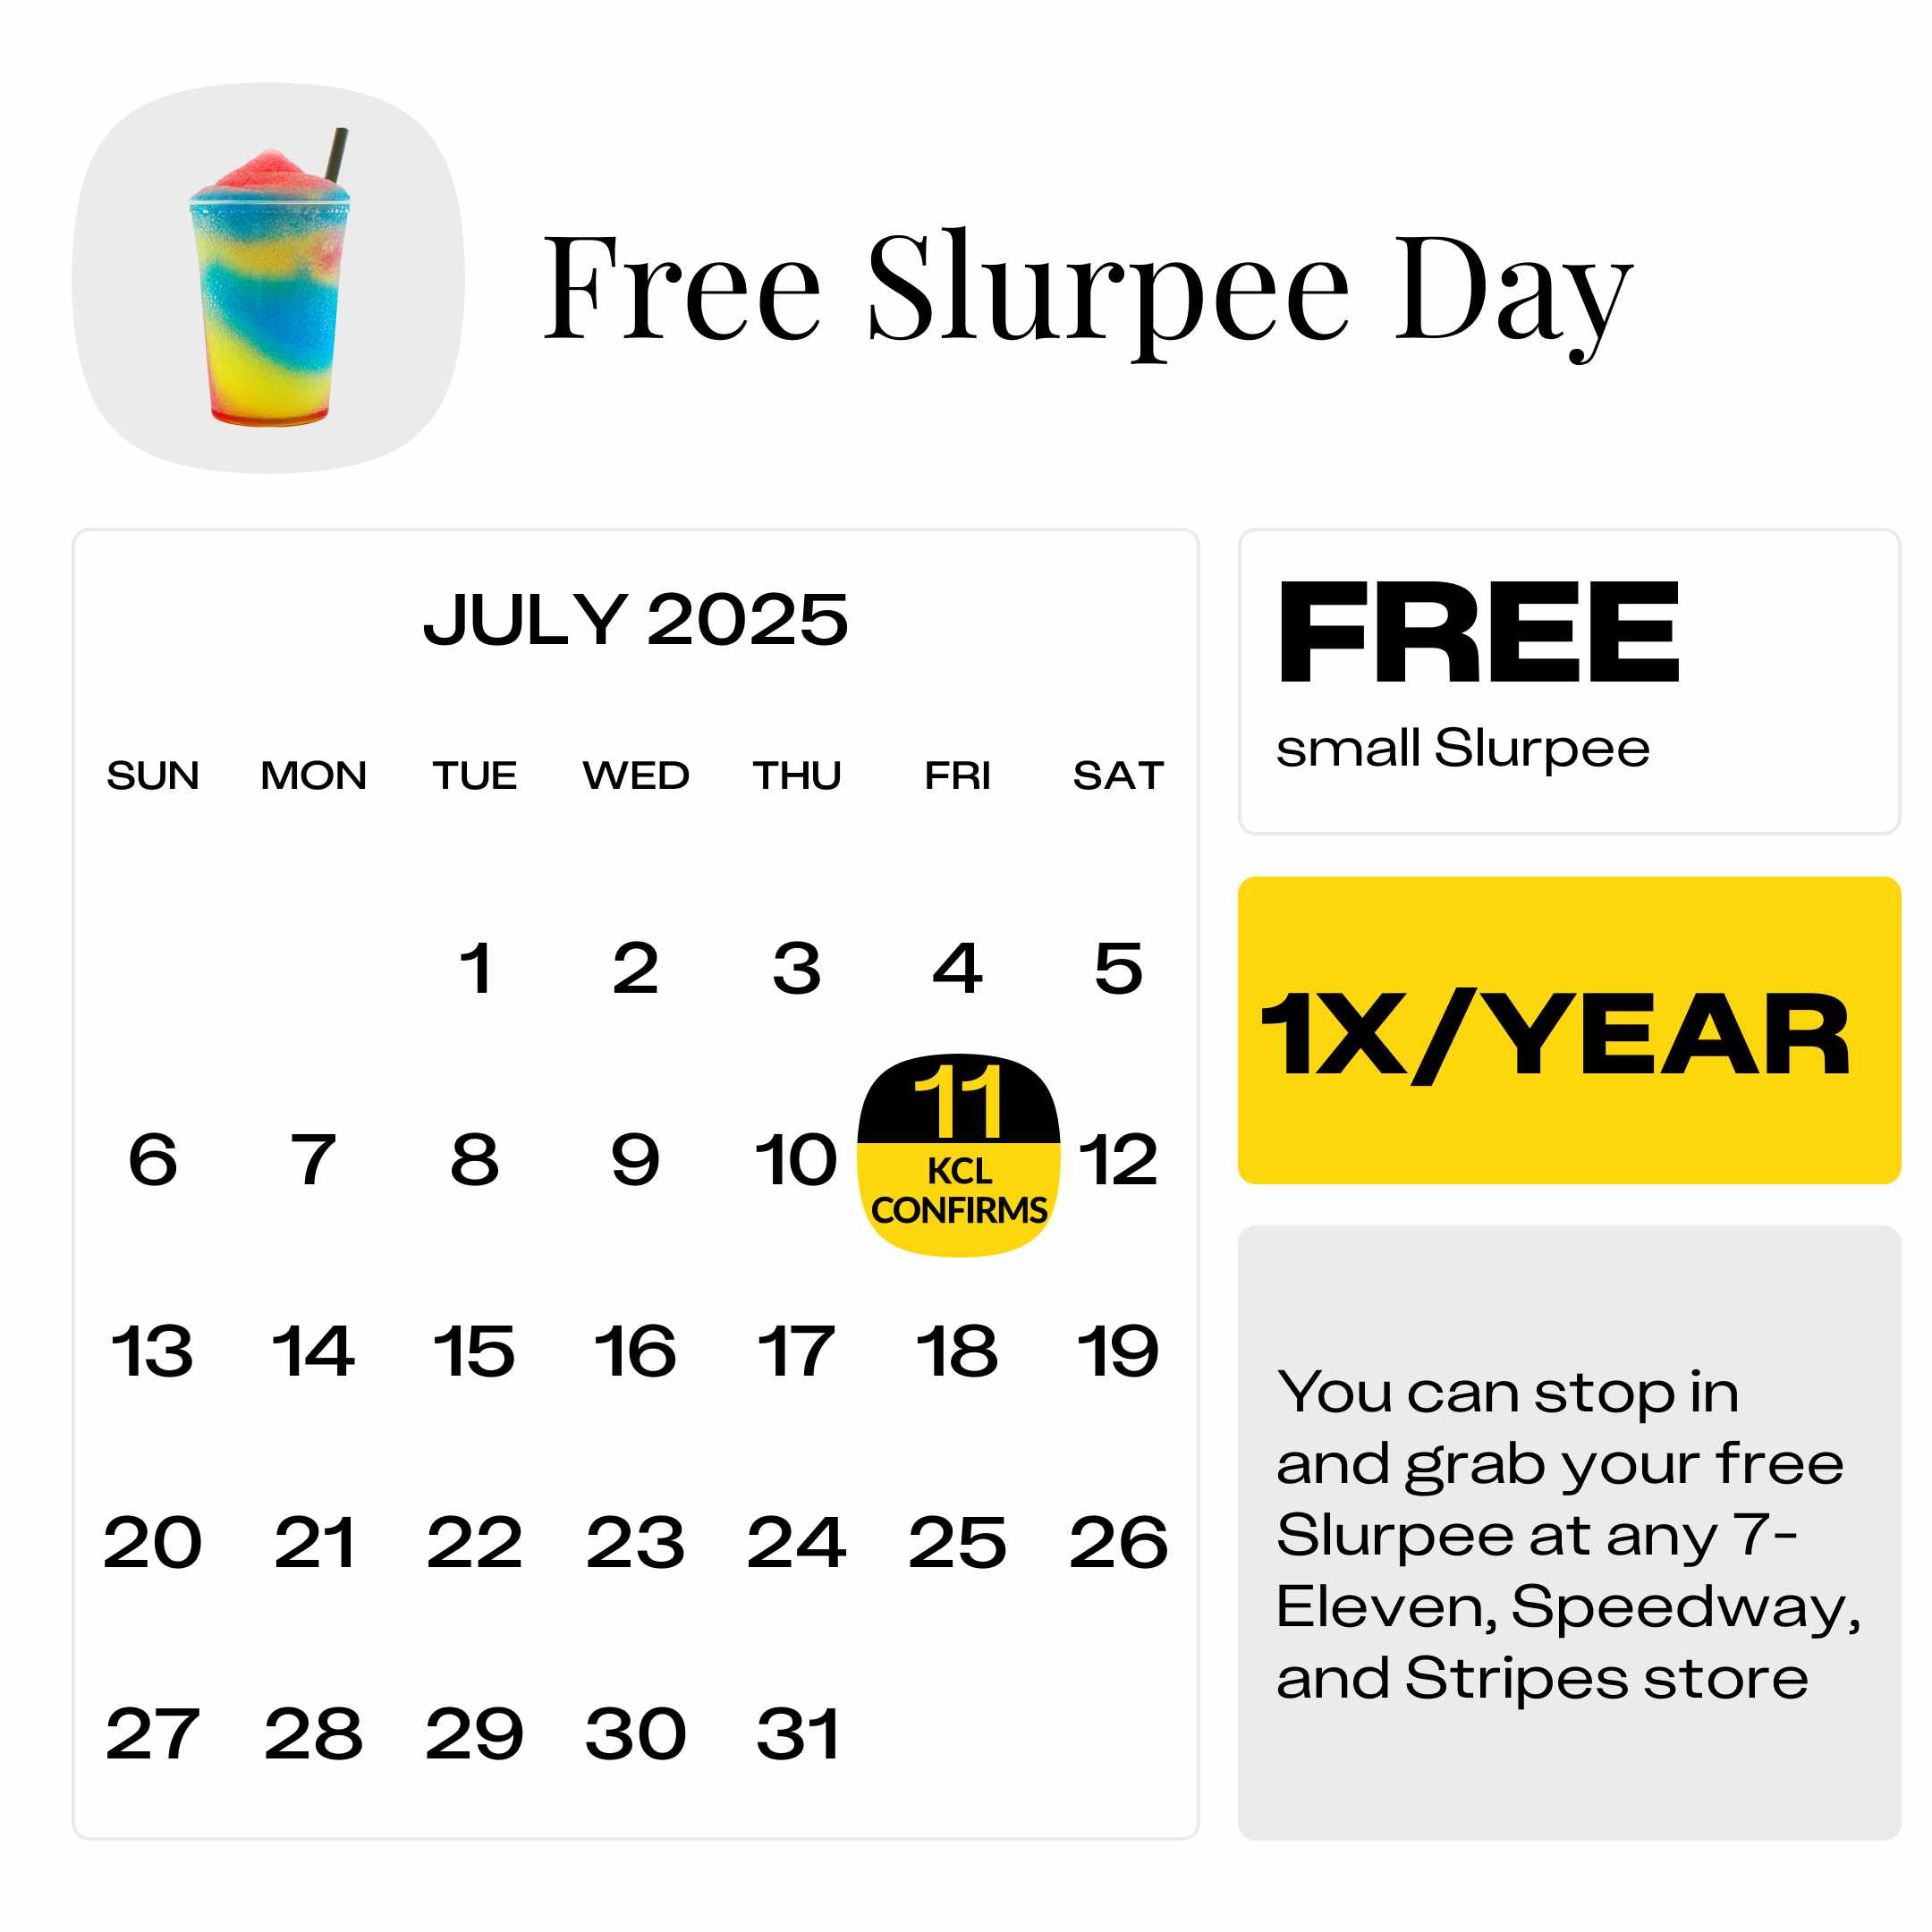 Free-Slurpee-Day-1